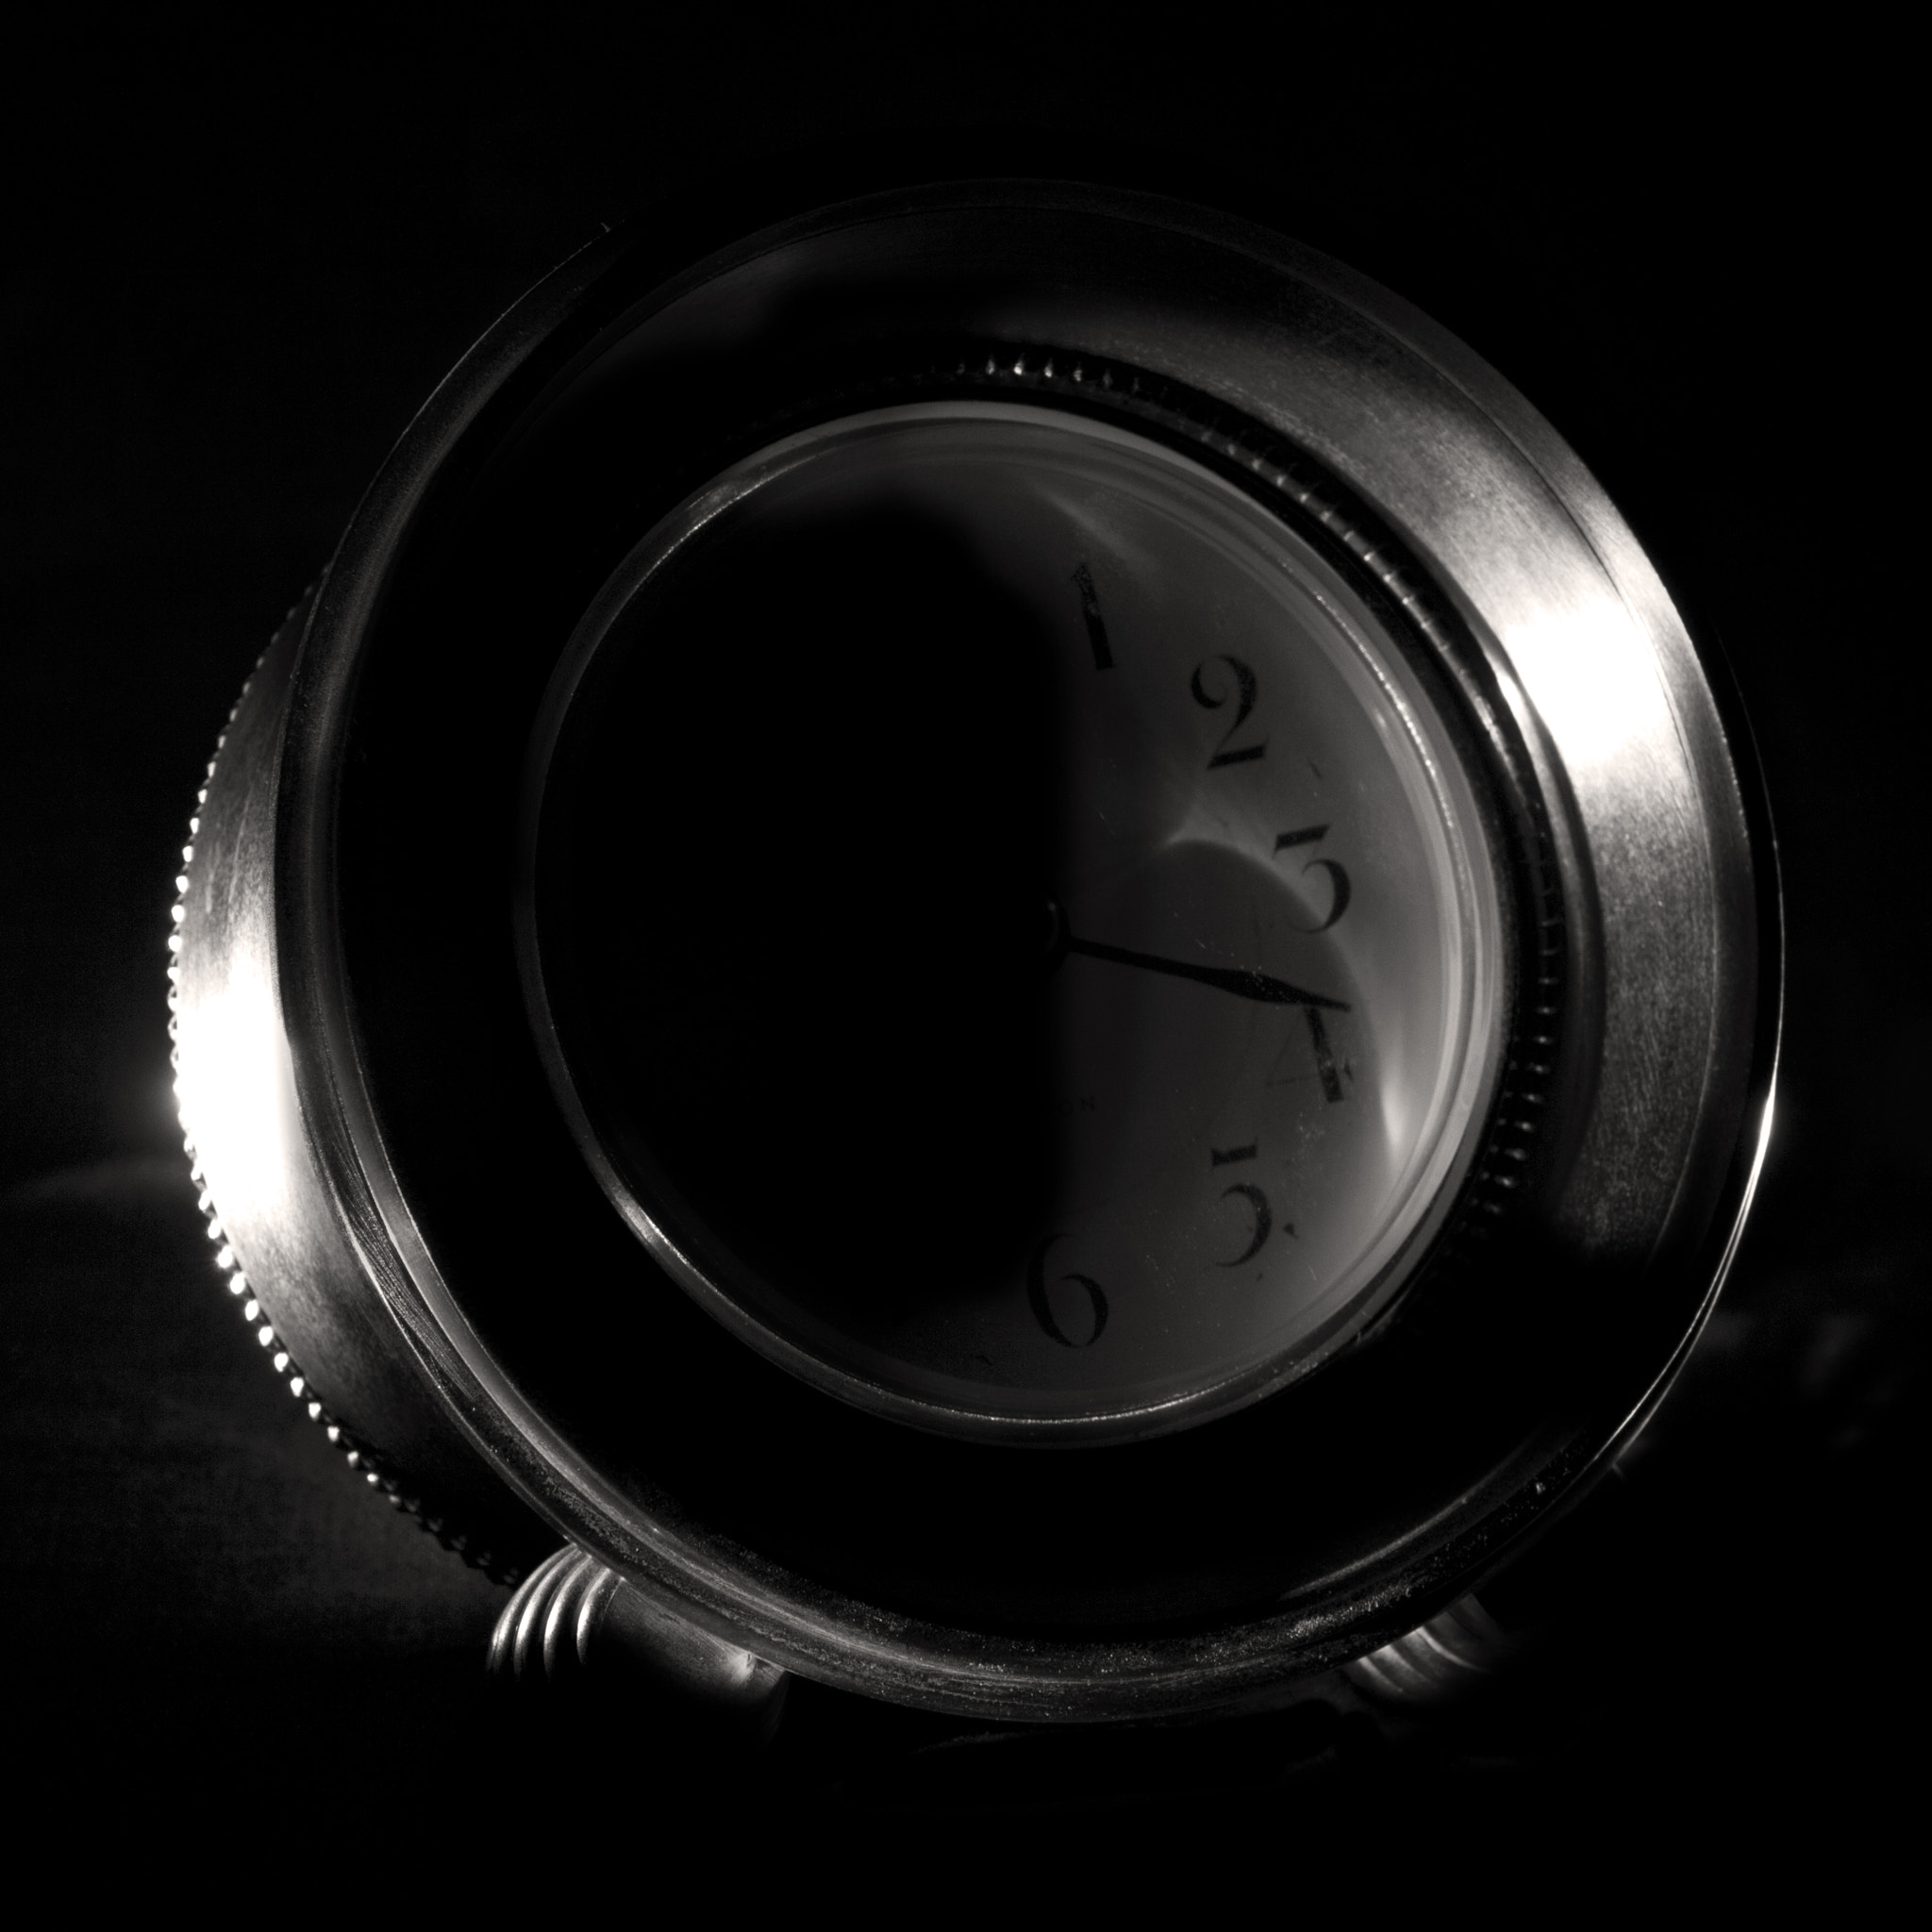 Canon EOS 60D sample photo. Clock photography